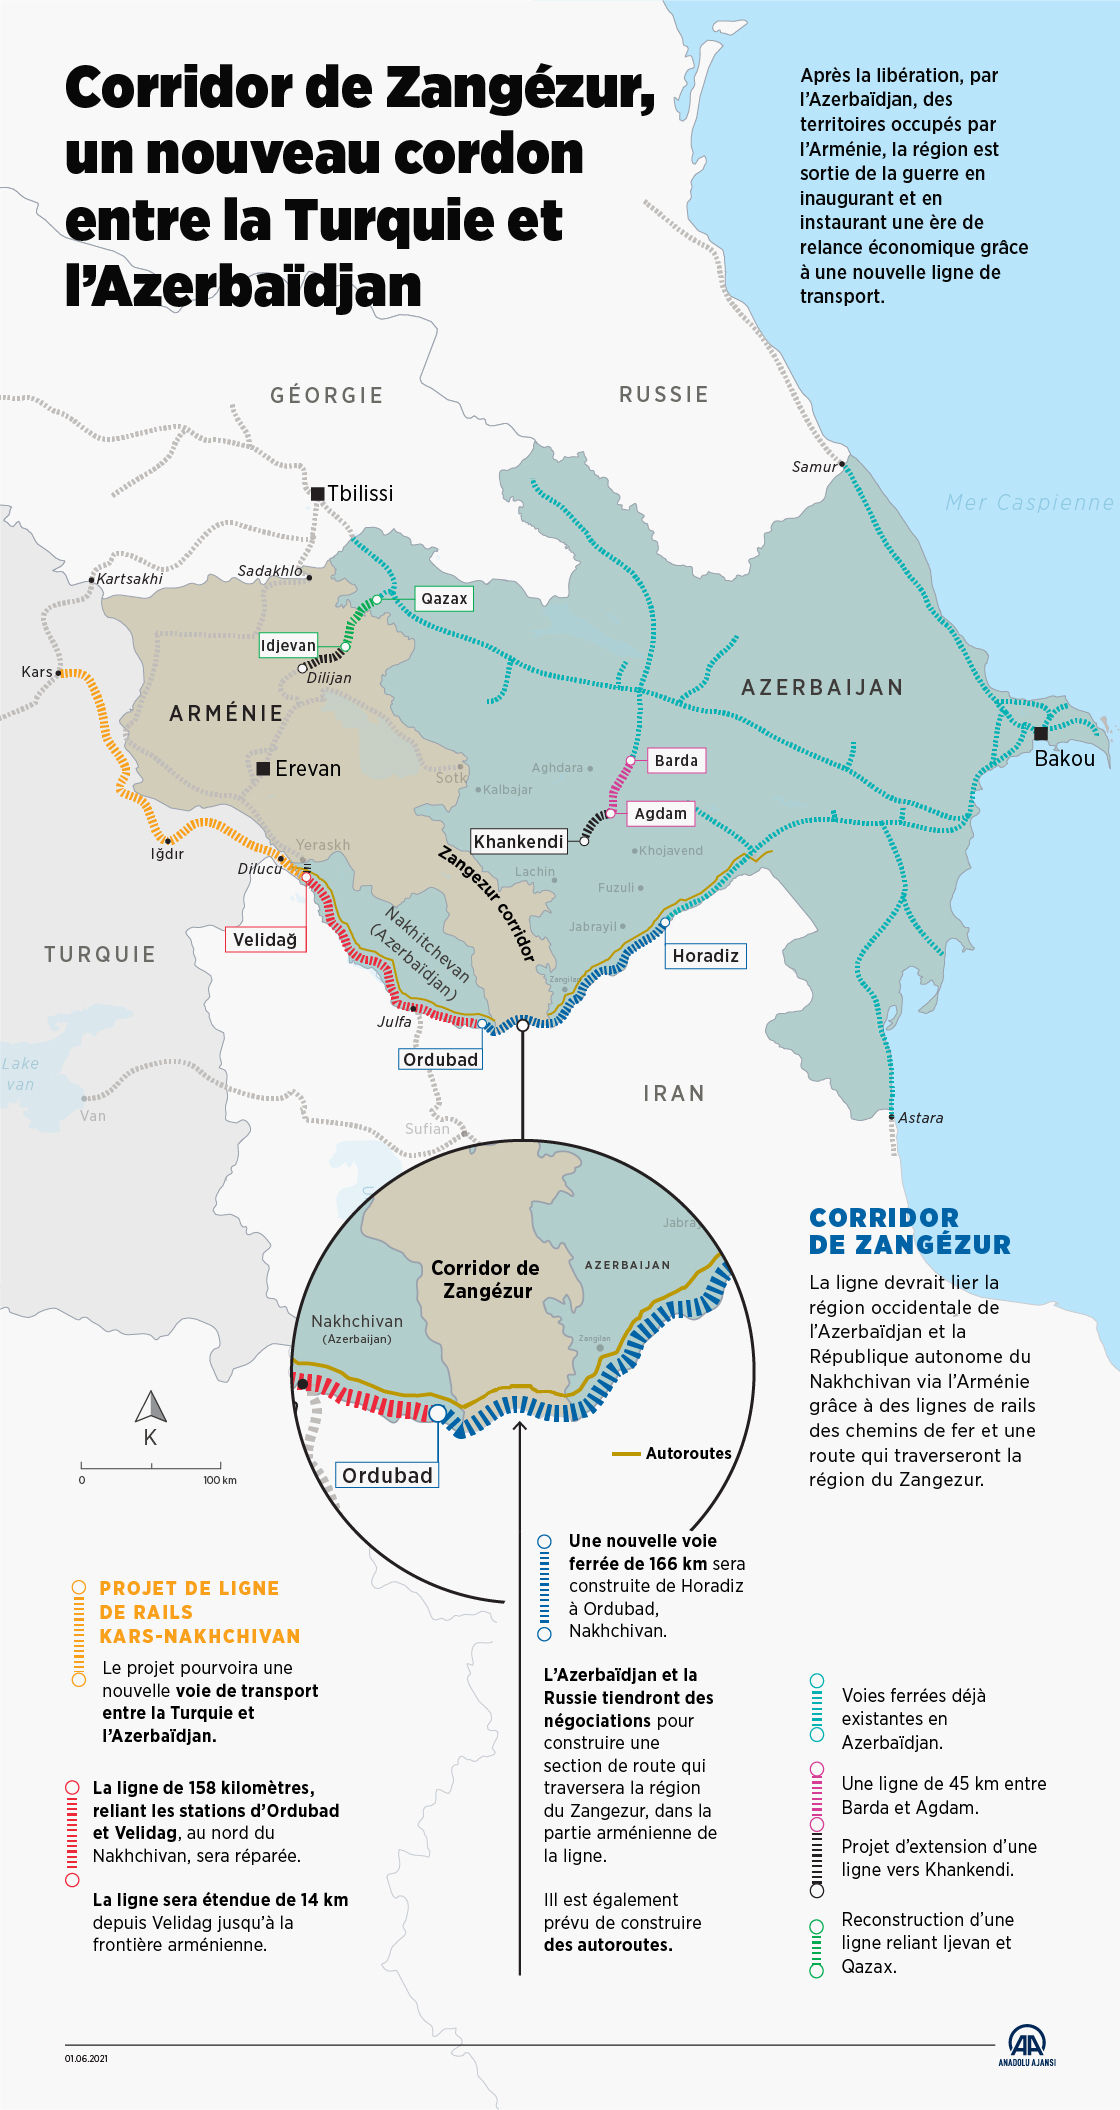 Corridor de Zangézur, un nouveau cordon entre la Turquie et l’Azerbaïdjan